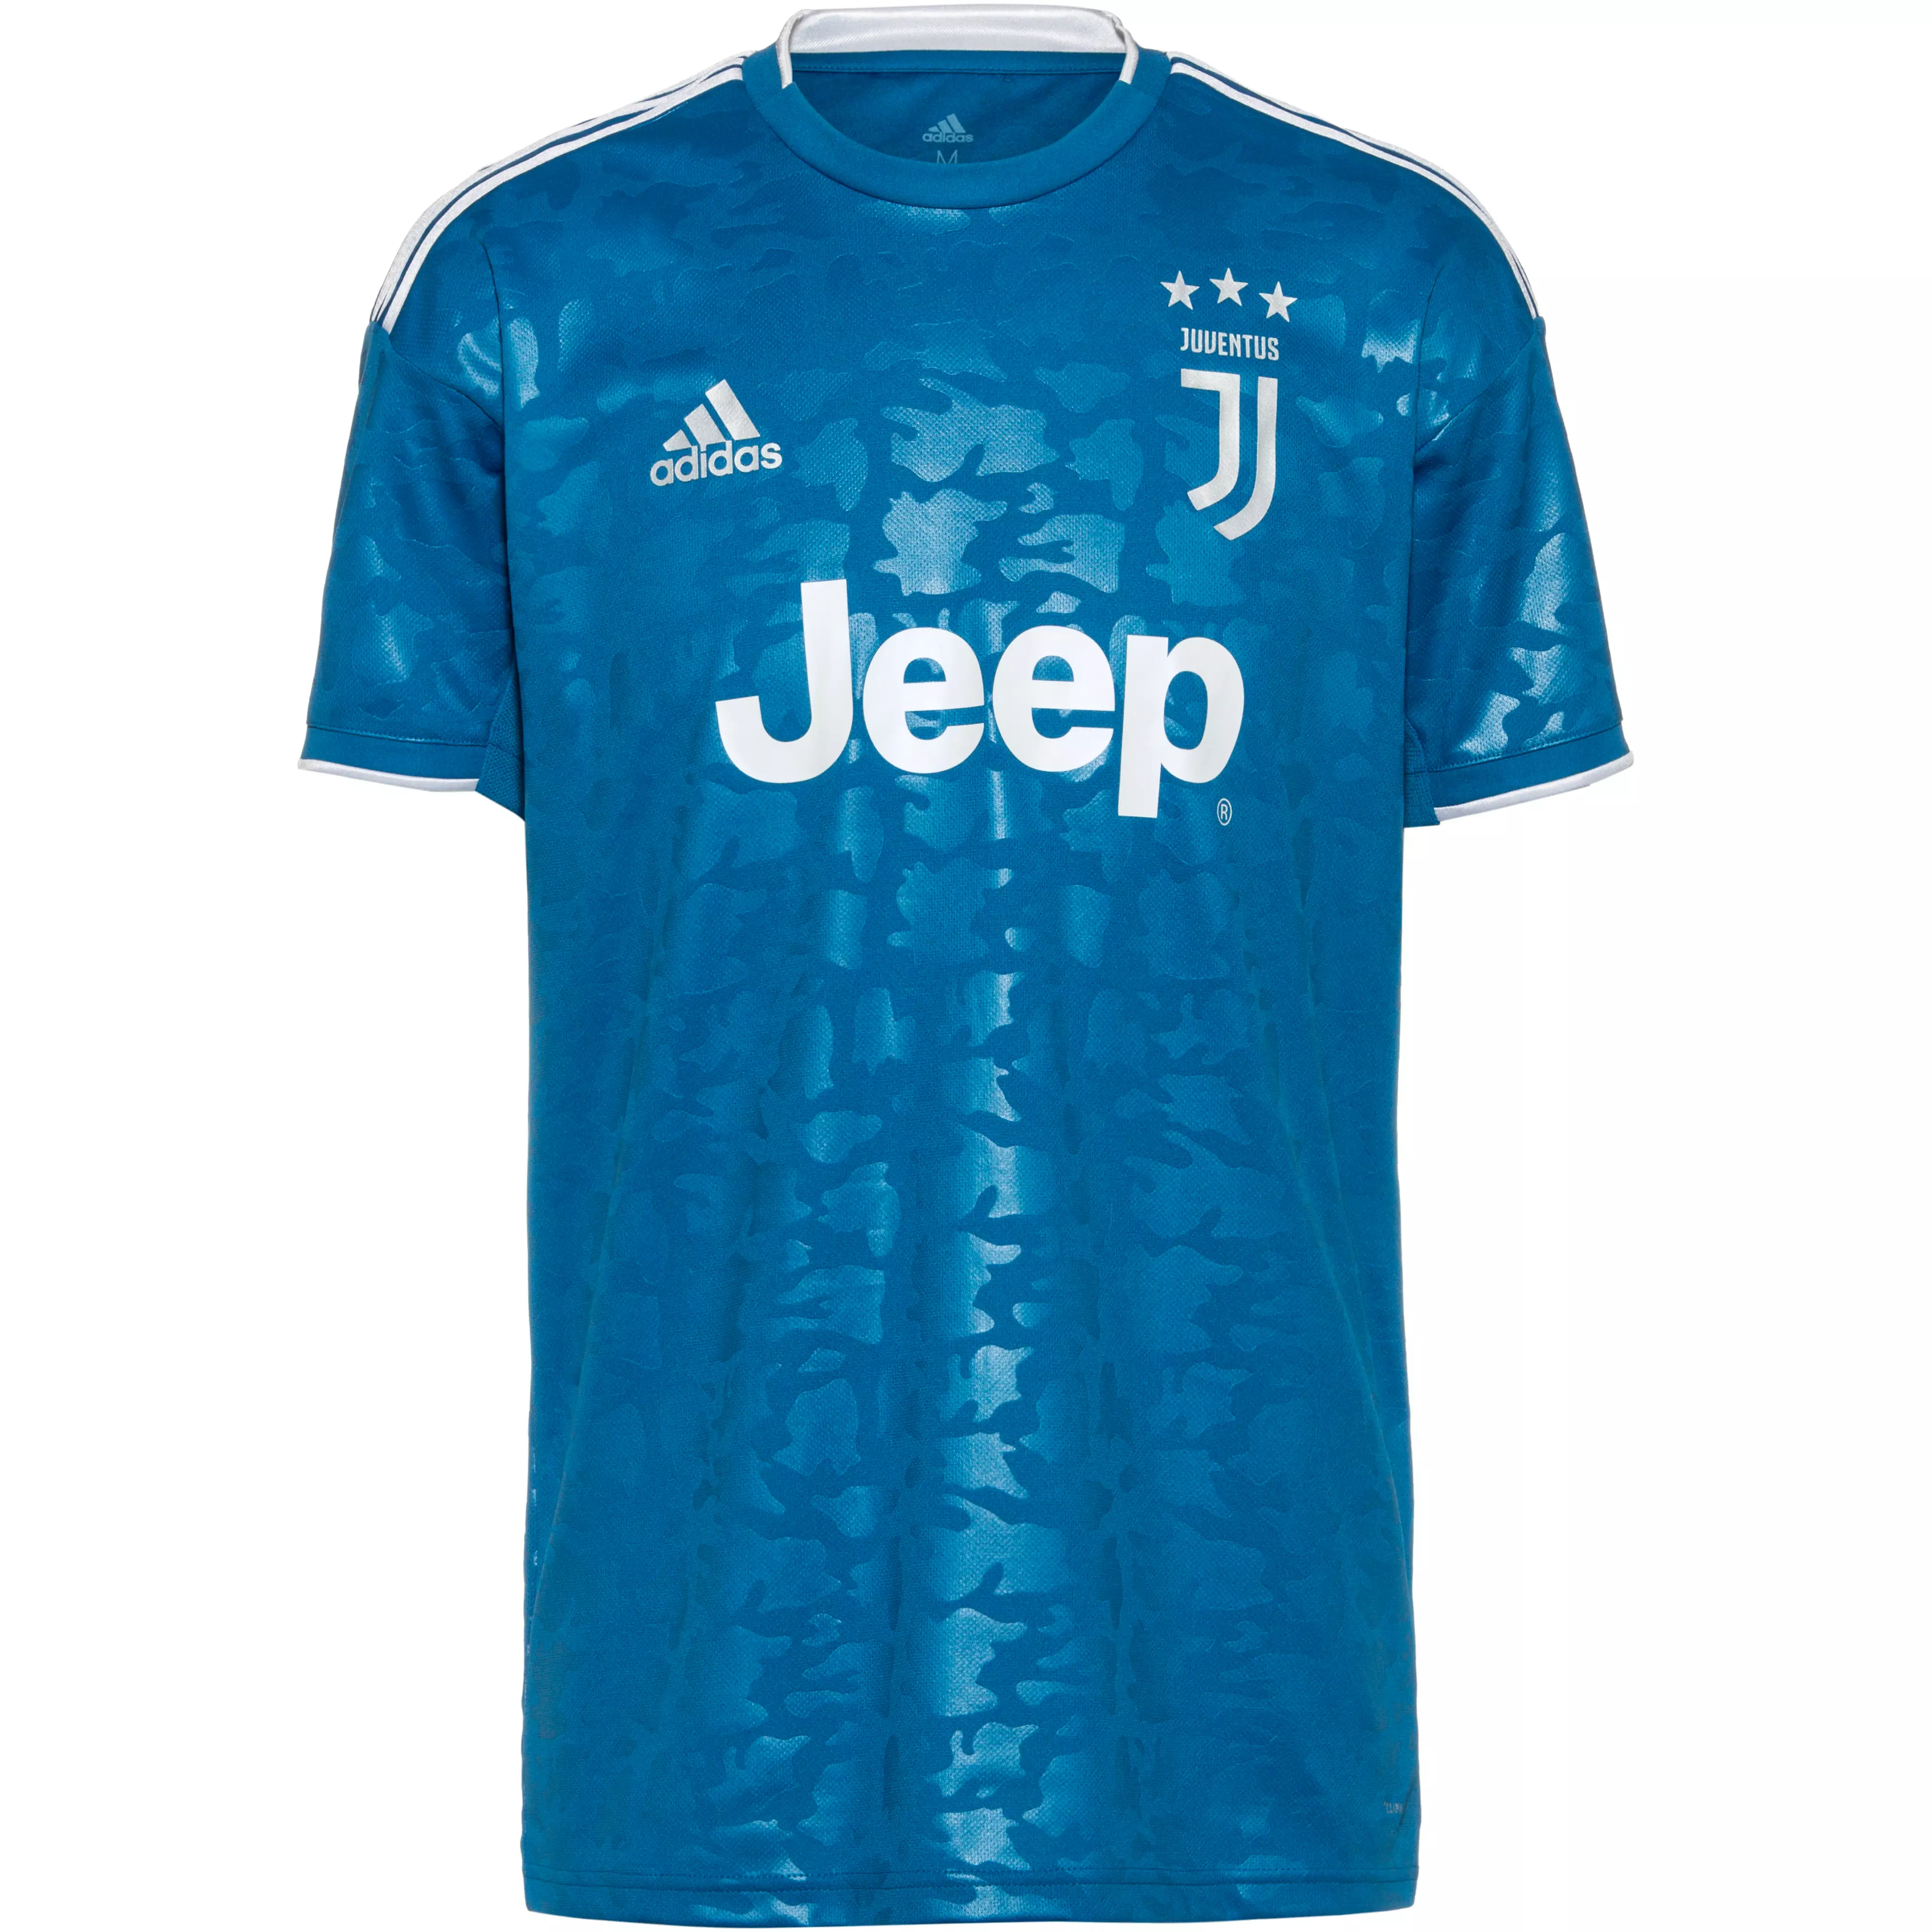 Adidas Juventus Turin 19 20 3rd Trikot Herren Unity Blue Aero Blue Im Online Shop Von Sportscheck Kaufen